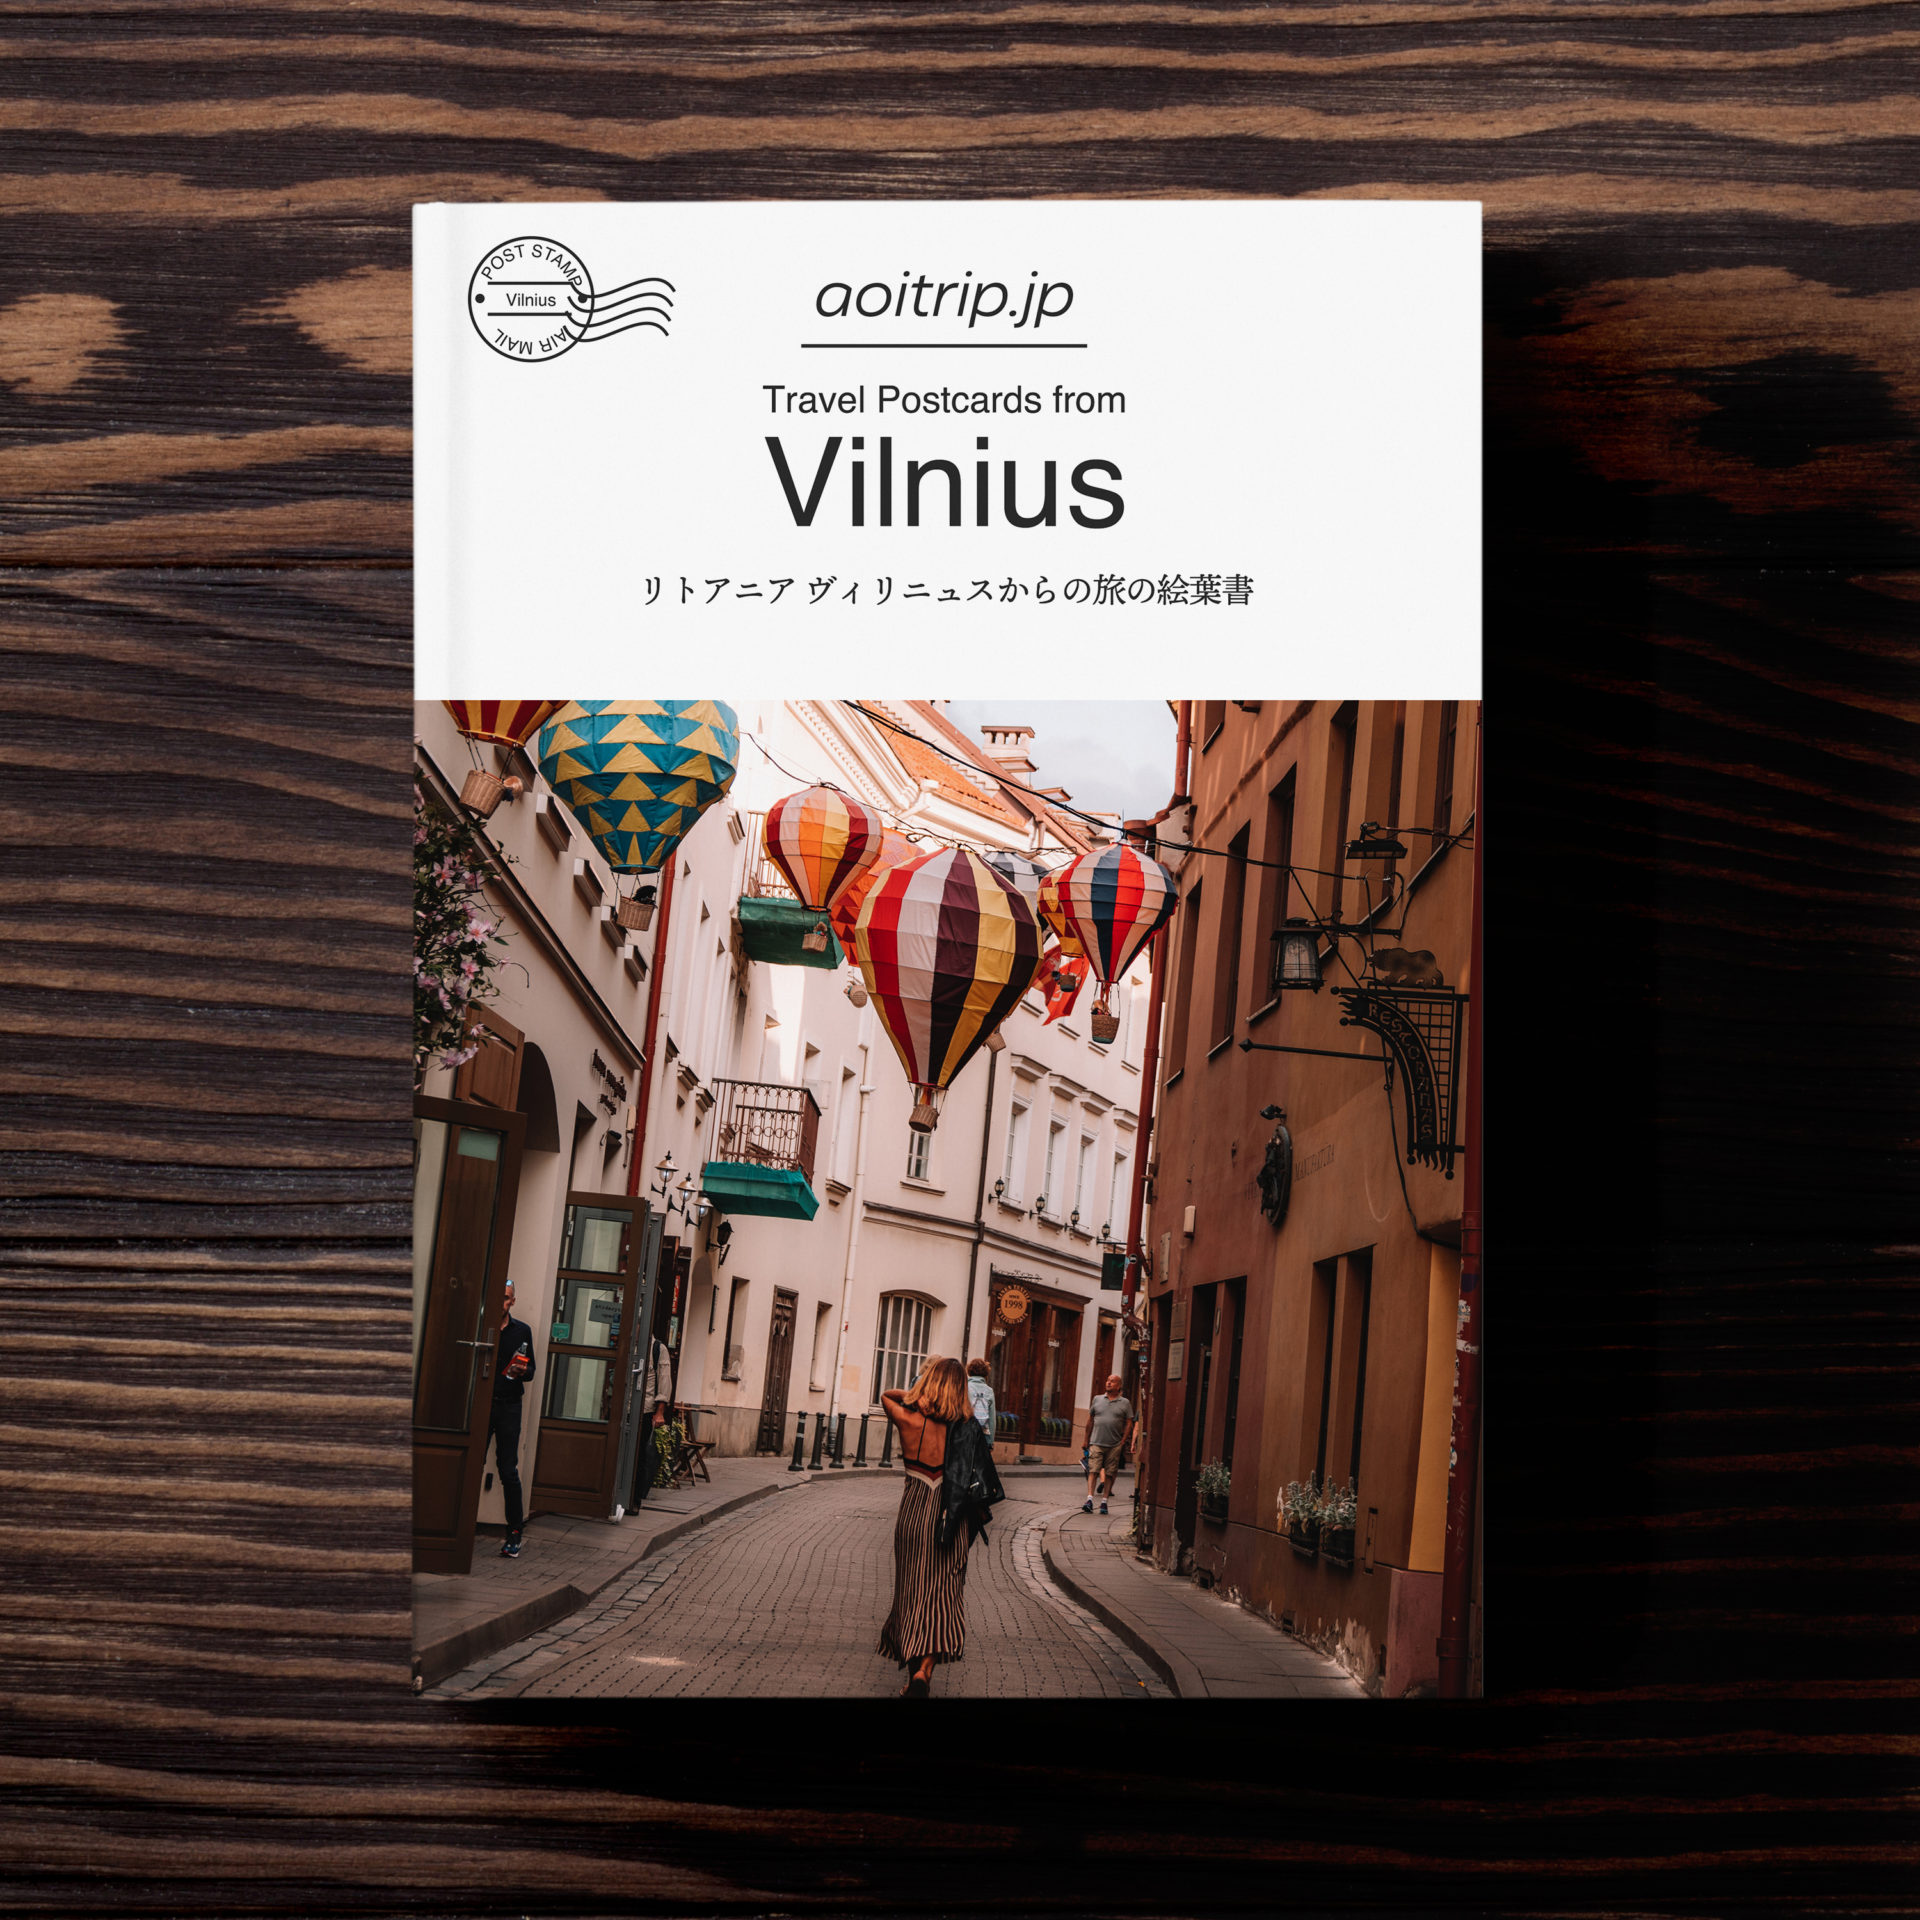 リトアニア ヴィリニュスからの旅の絵葉書 Travel Postcards from Vilnius, Lithuania